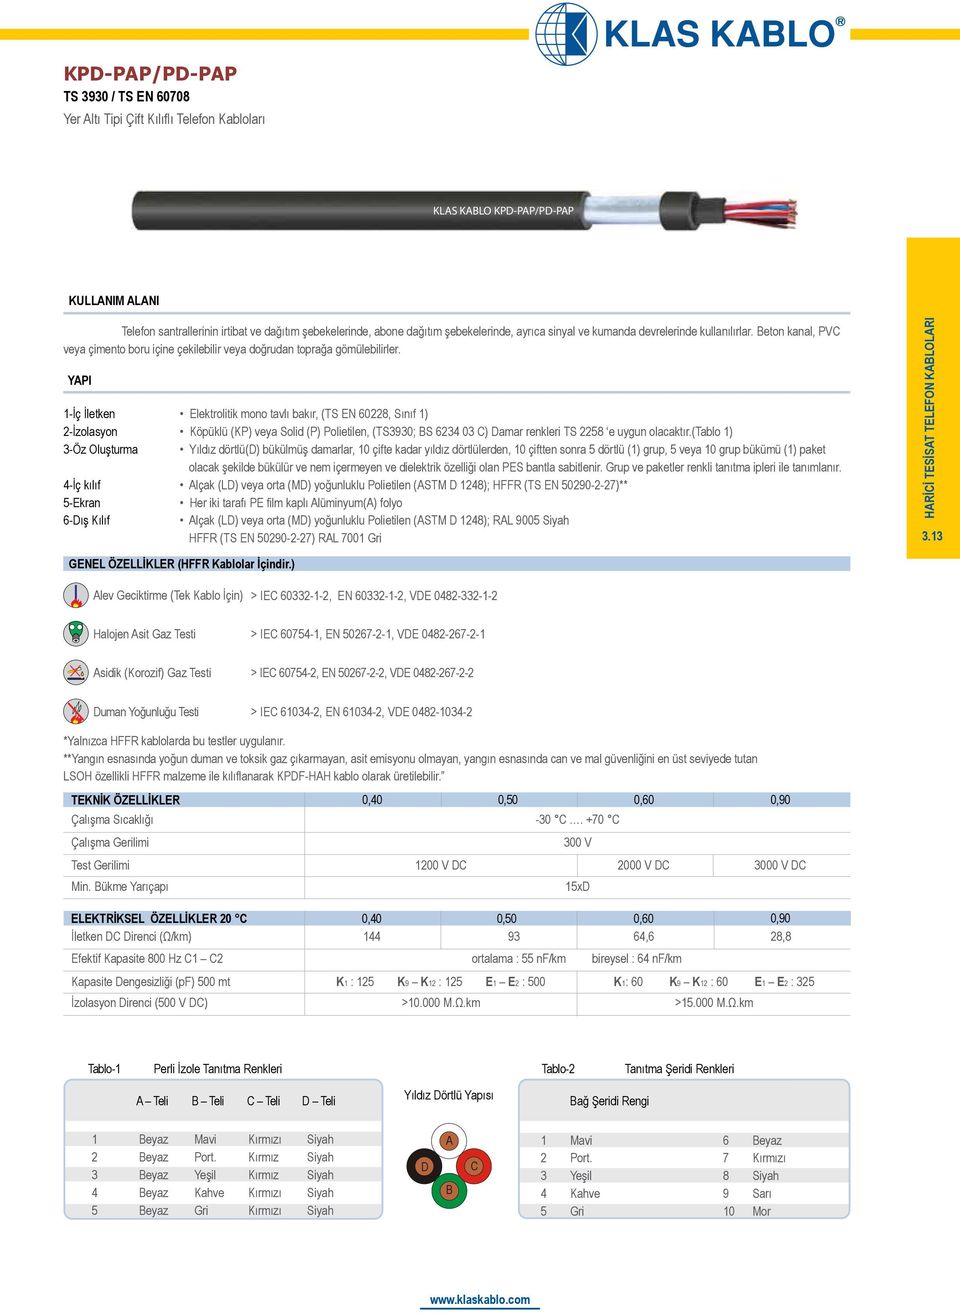 -İç kılıf -Ekran 6-Dış Kılıf Elektrolitik mono tavlı bakır, (TS EN 608, Sınıf ) Köpüklü (KP) veya Solid (P) Polietilen, (TS90; BS 6 0 C) Damar renkleri TS 8 e uygun olacaktır.